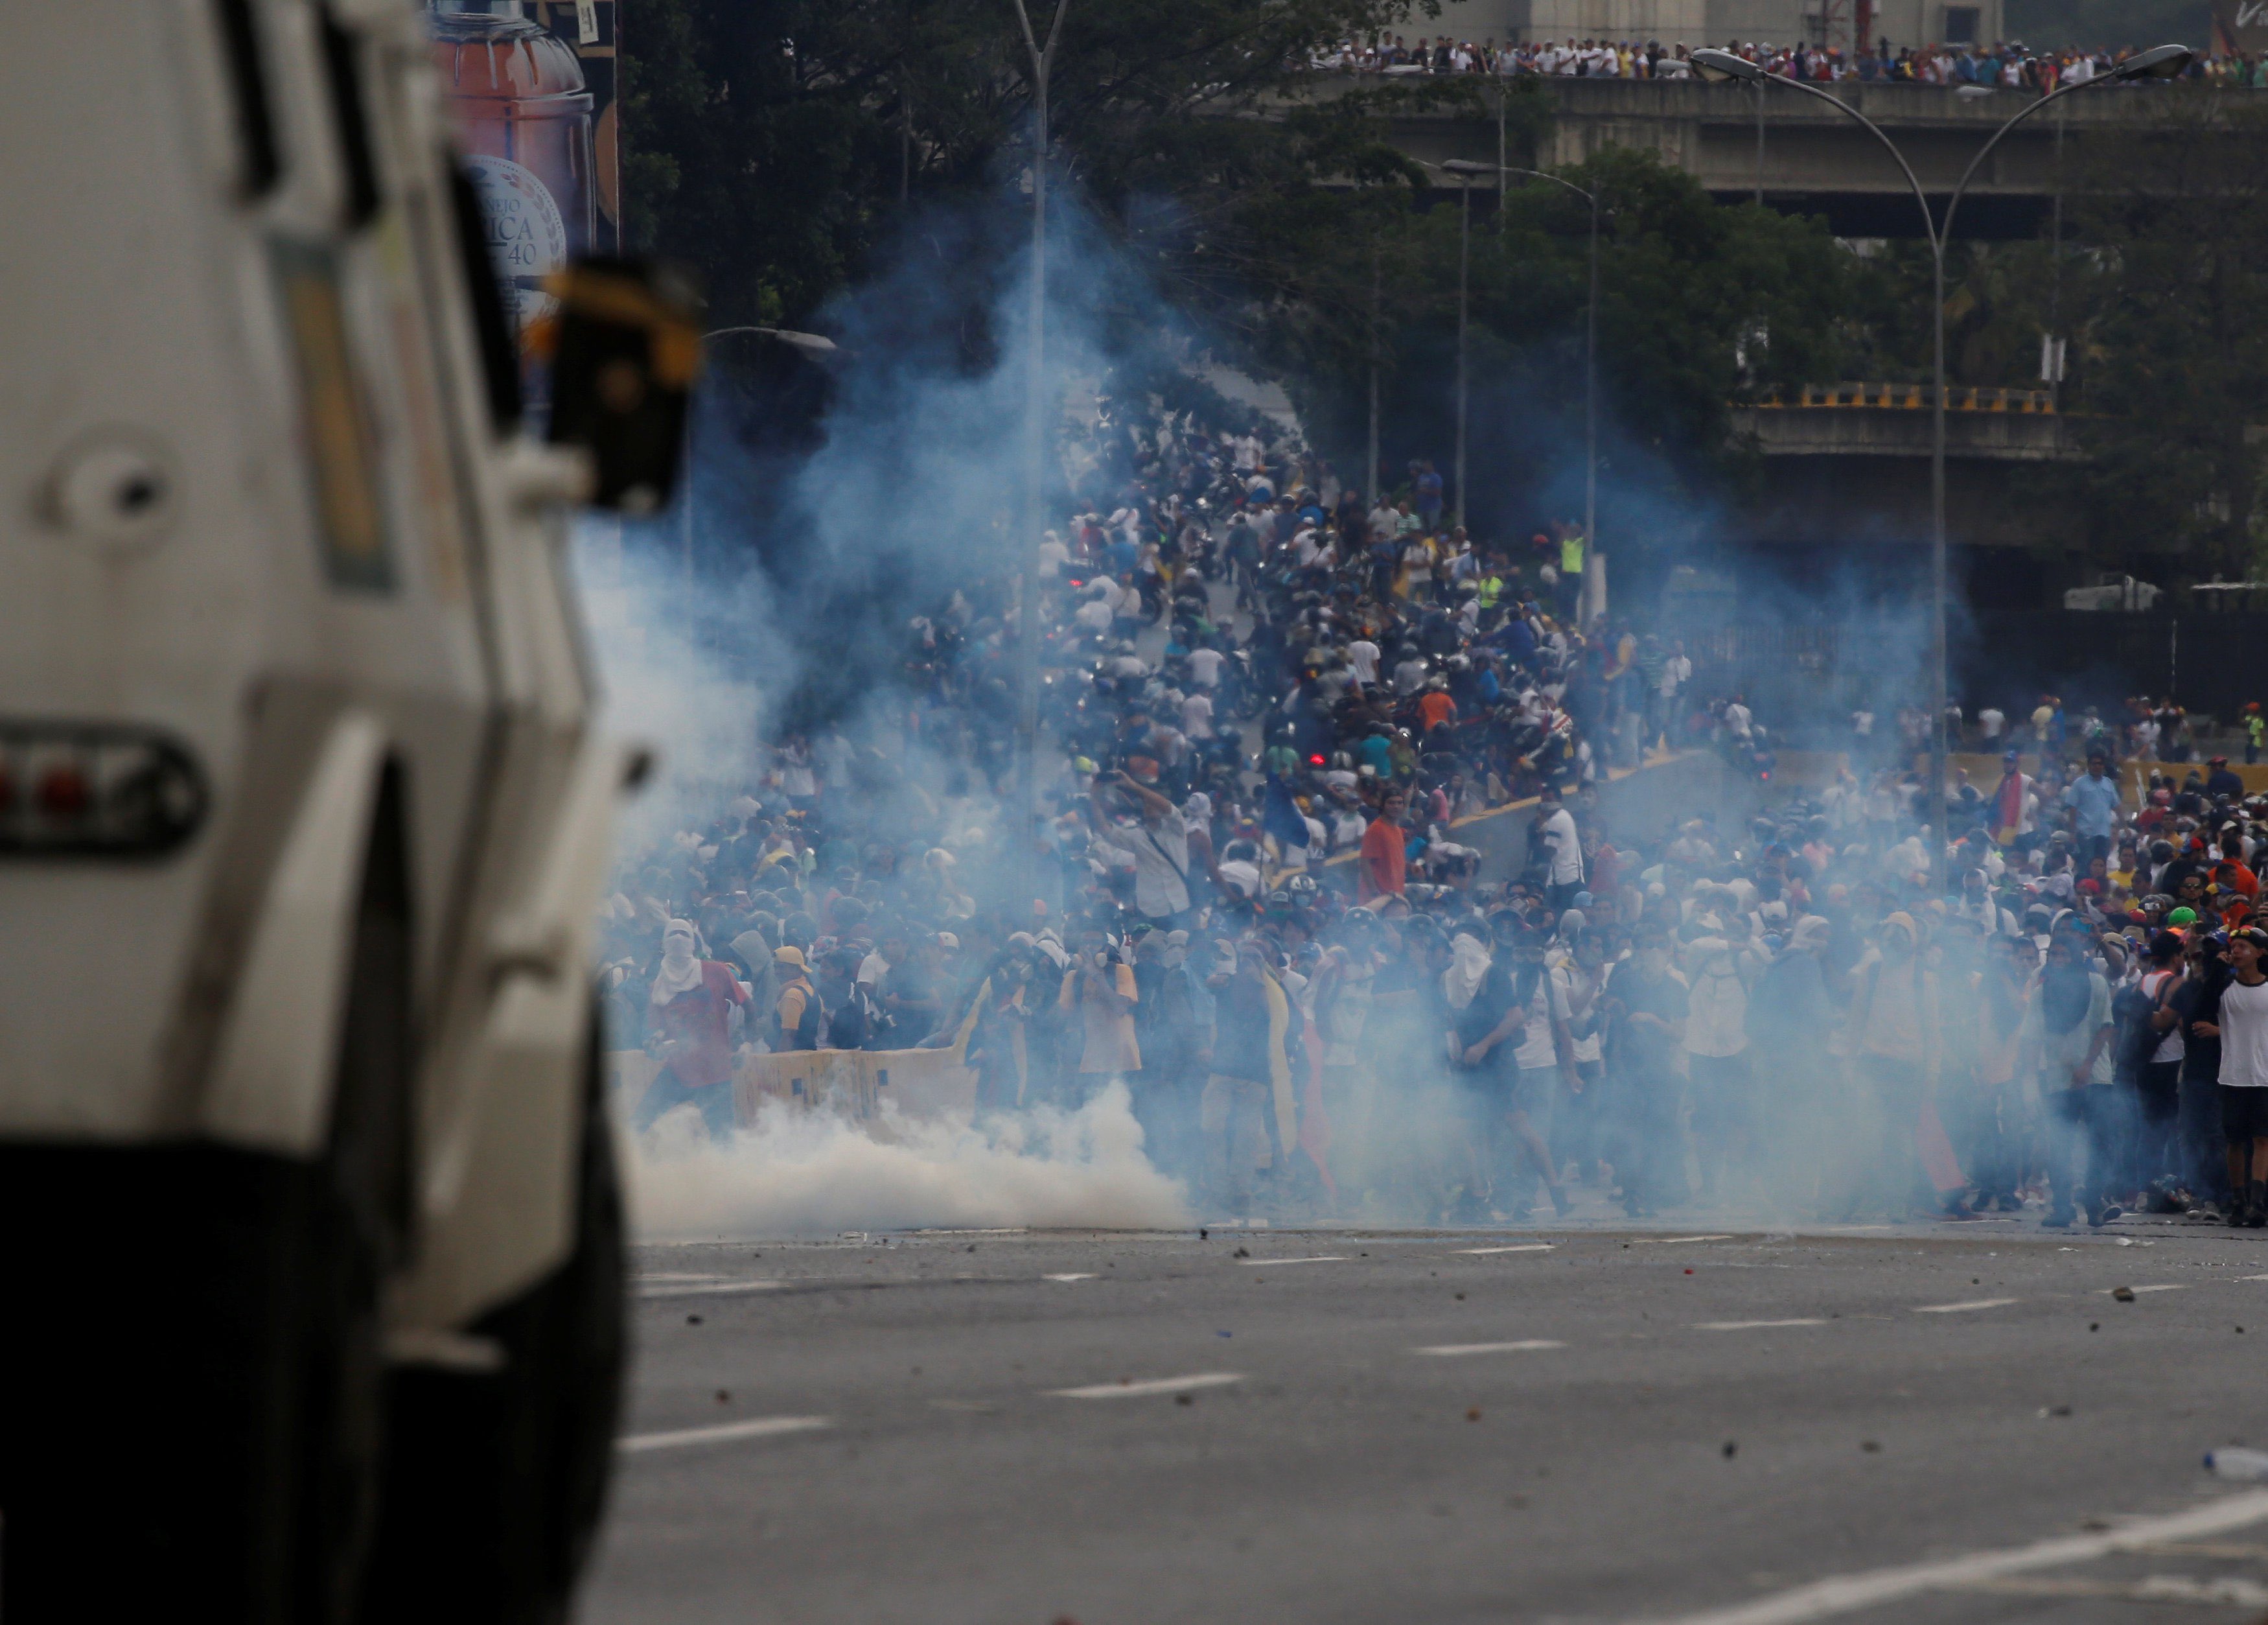 protestas en venezuela